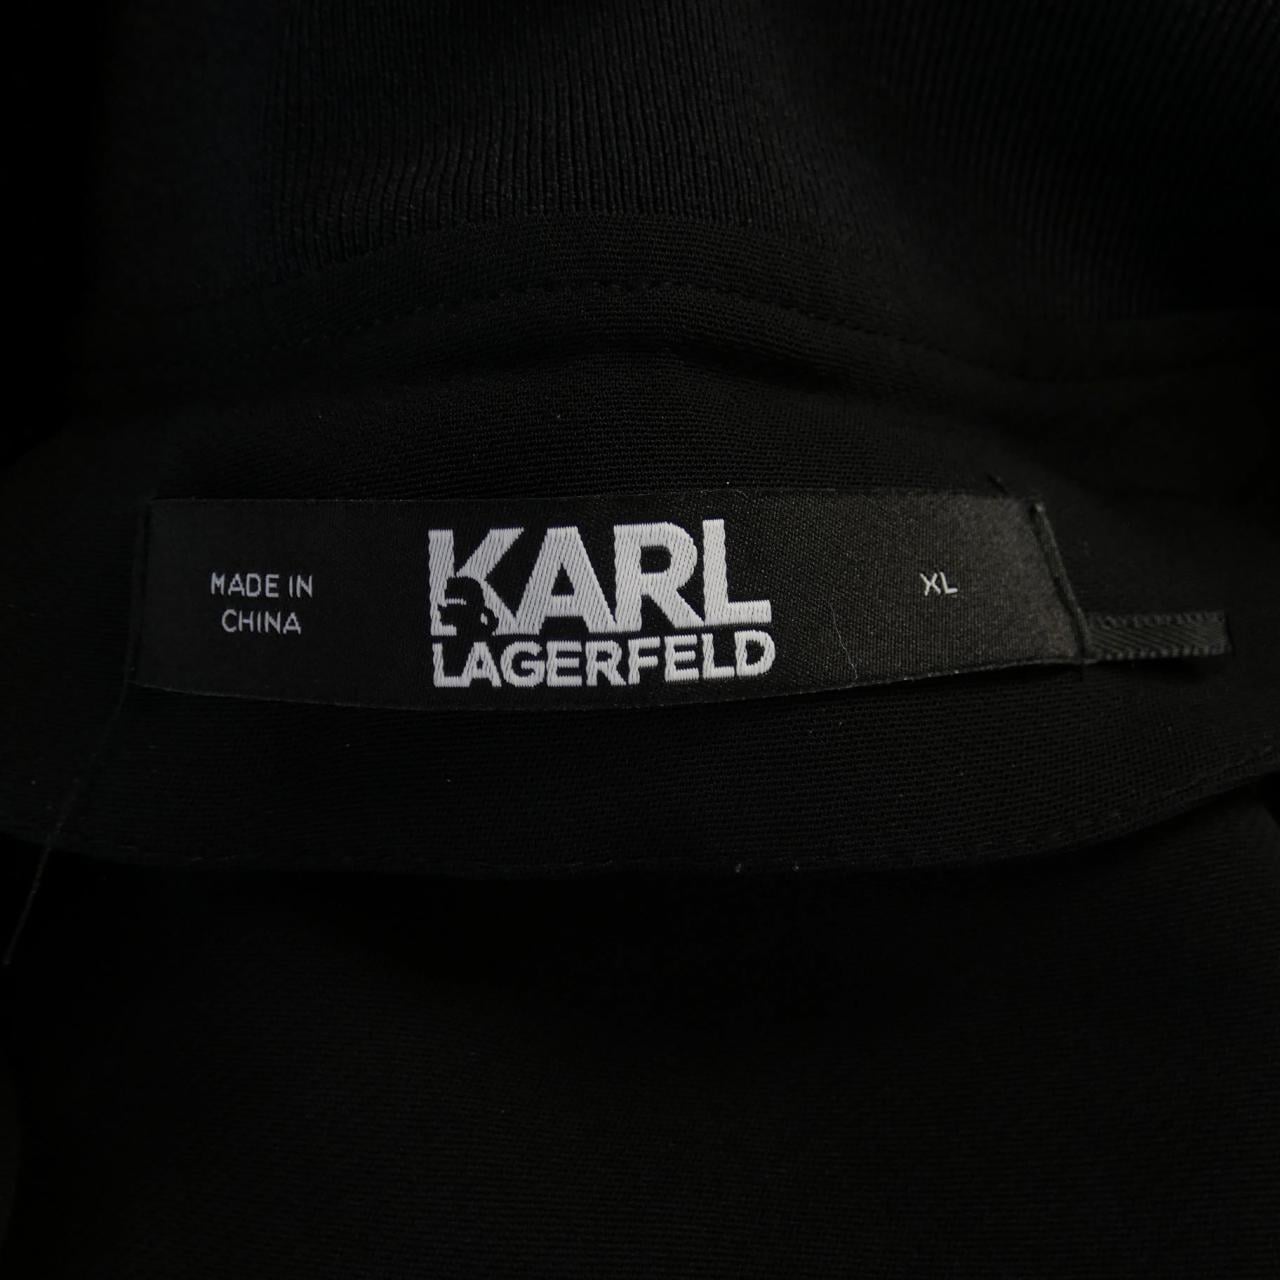 カールラガーフェルド Karl Lagerfeld ワンピース